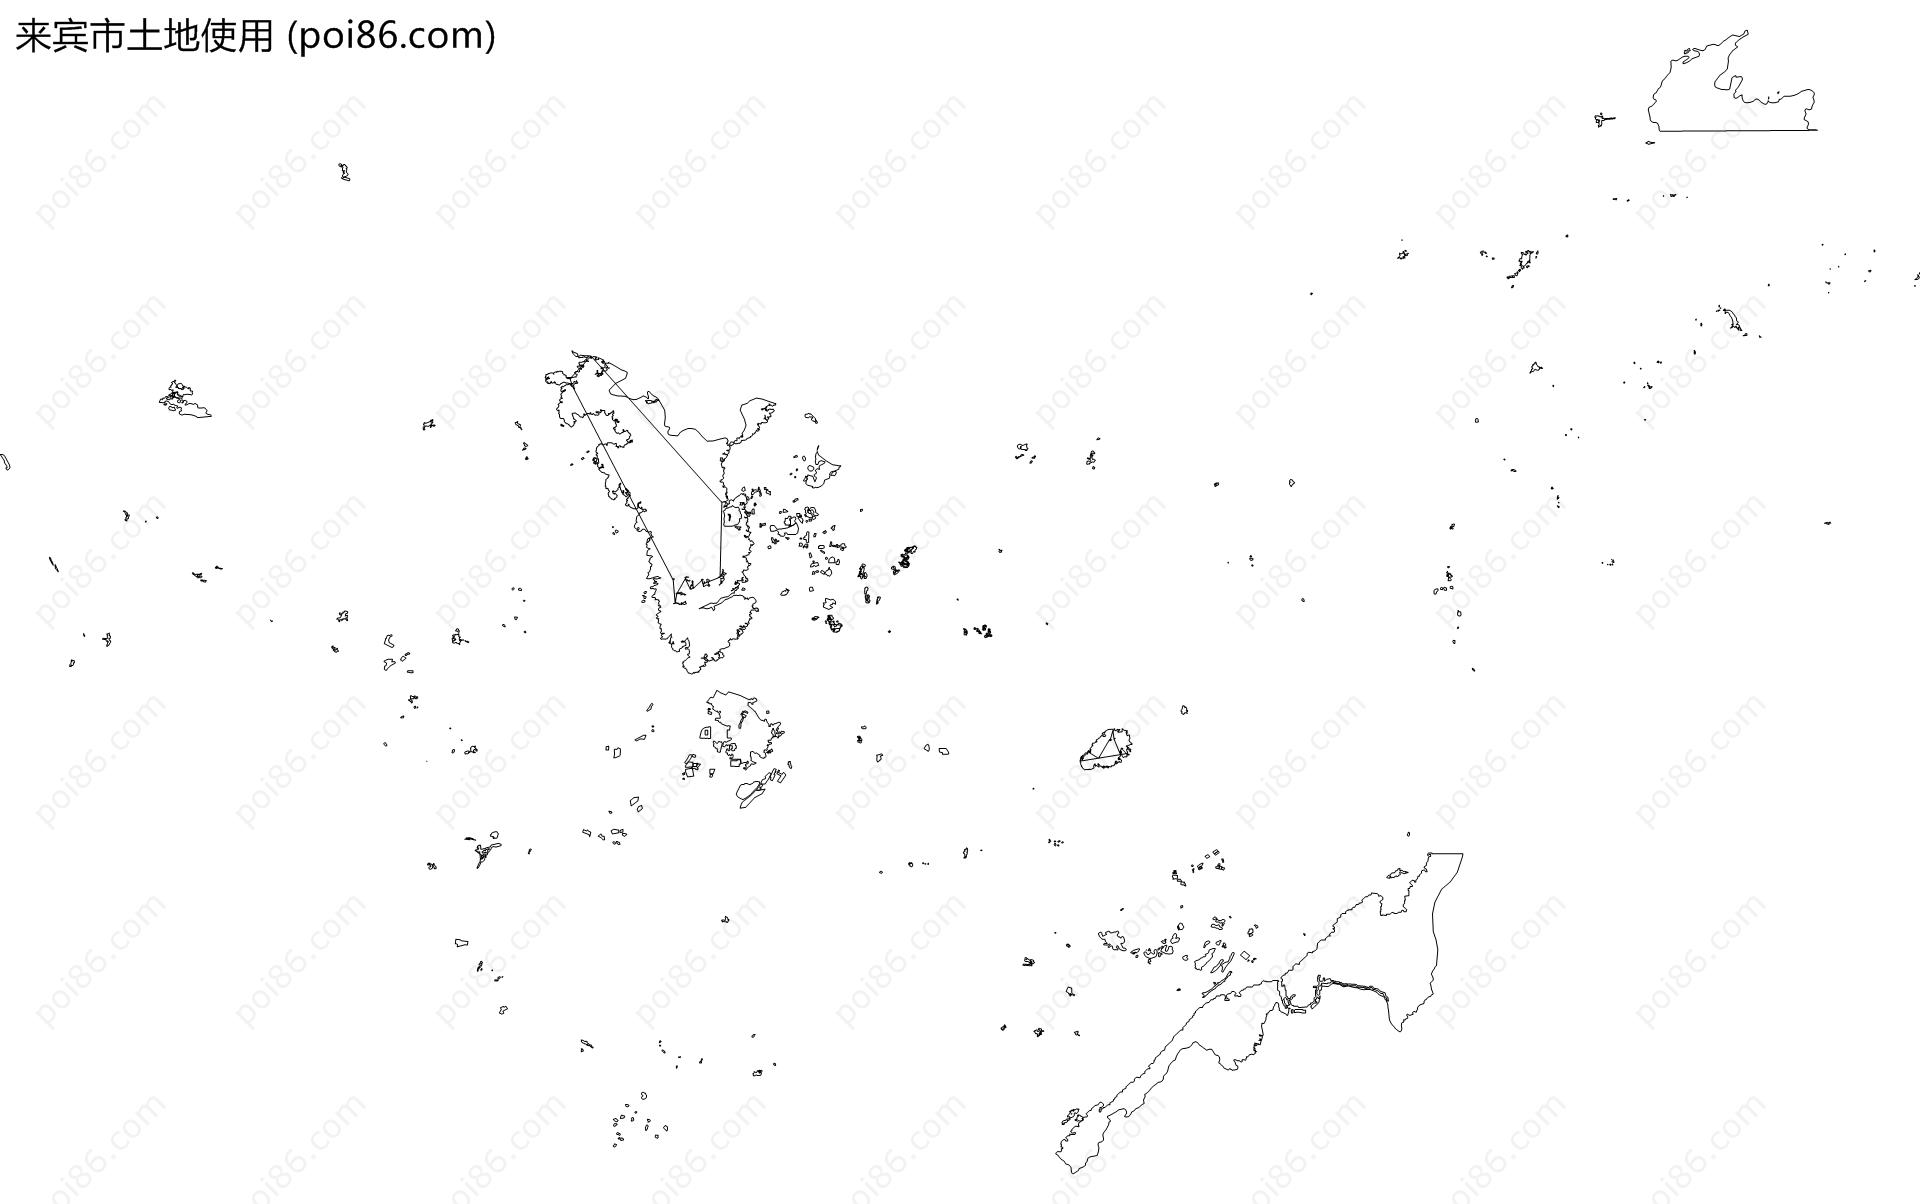 来宾市土地使用地图